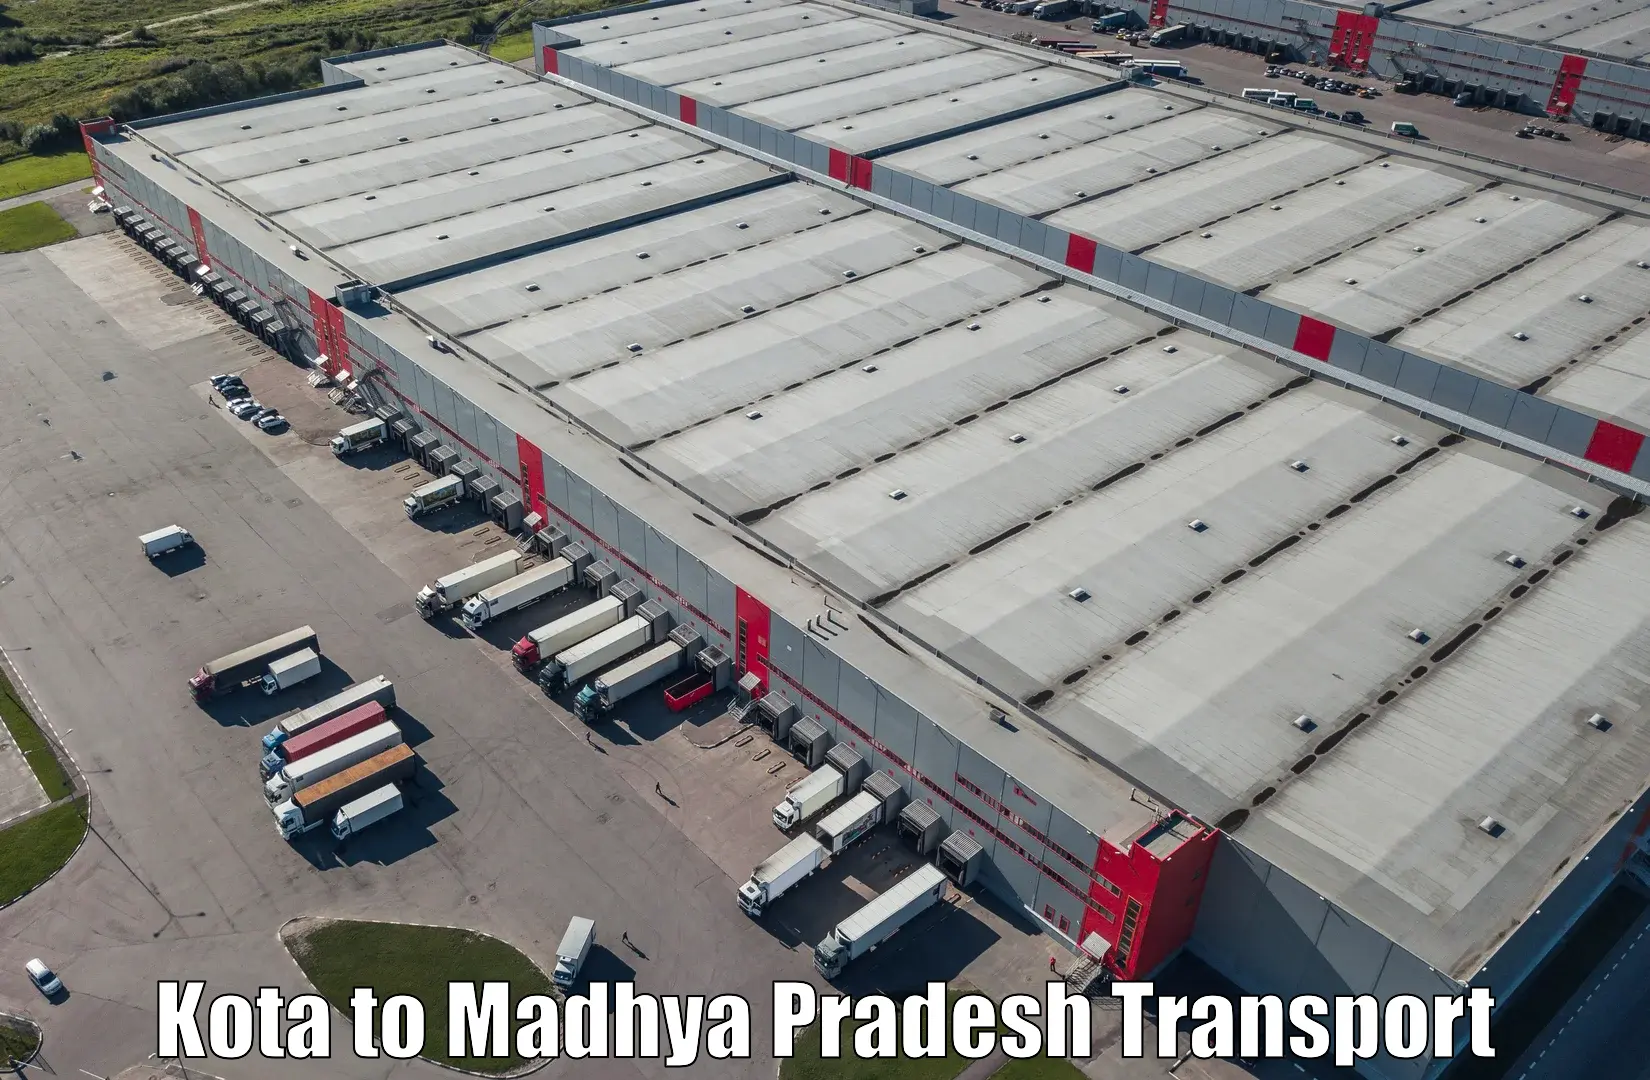 Truck transport companies in India Kota to Madhya Pradesh